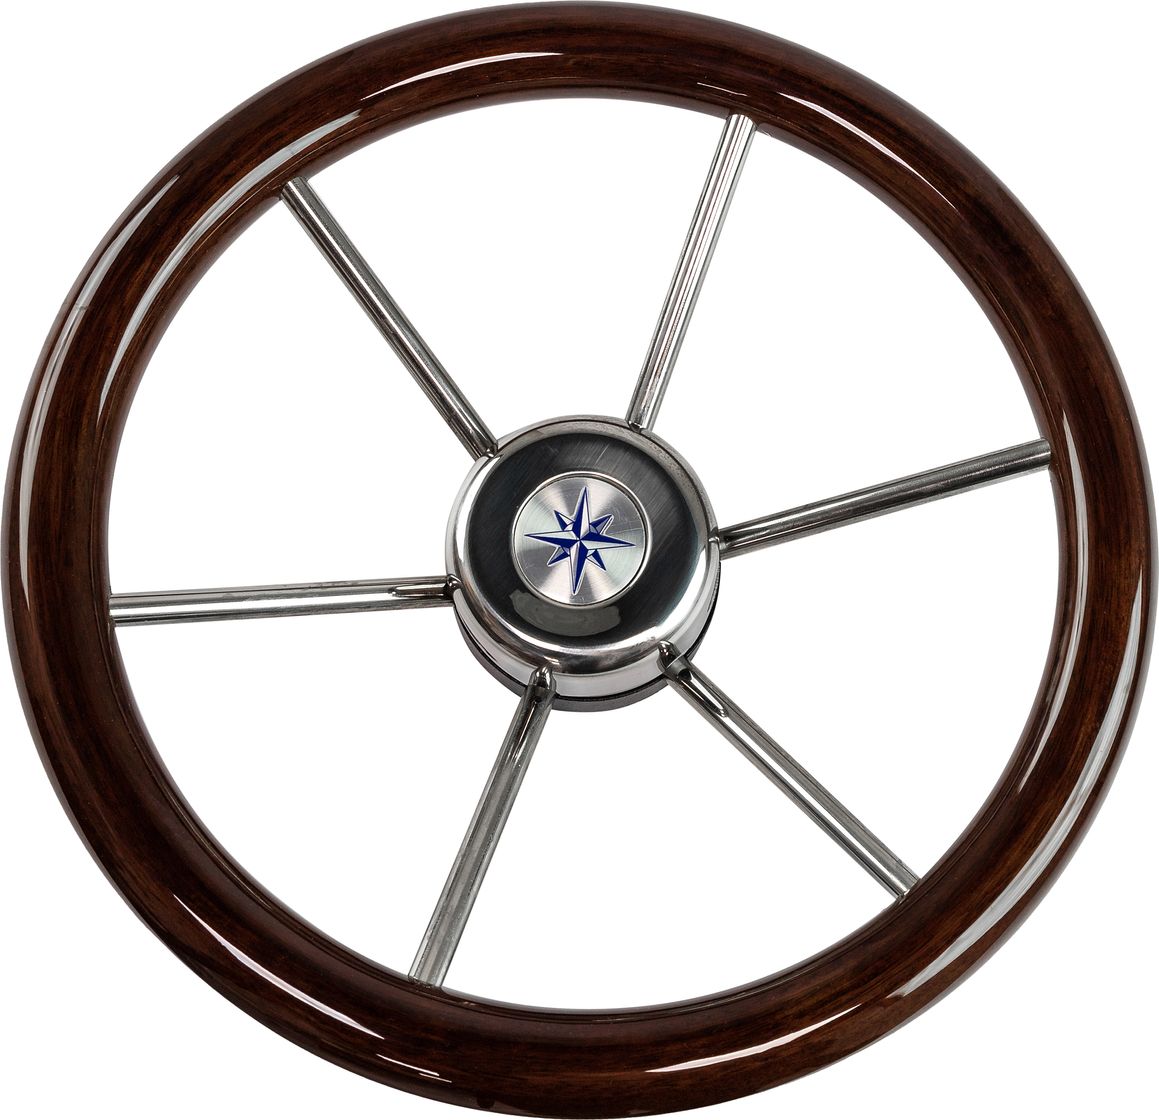 Рулевое колесо LEADER WOOD деревянный обод серебряные спицы д. 340 мм VN7340-33 рулевое колесо leader plast обод серебряные спицы д 360 мм vn8360 01